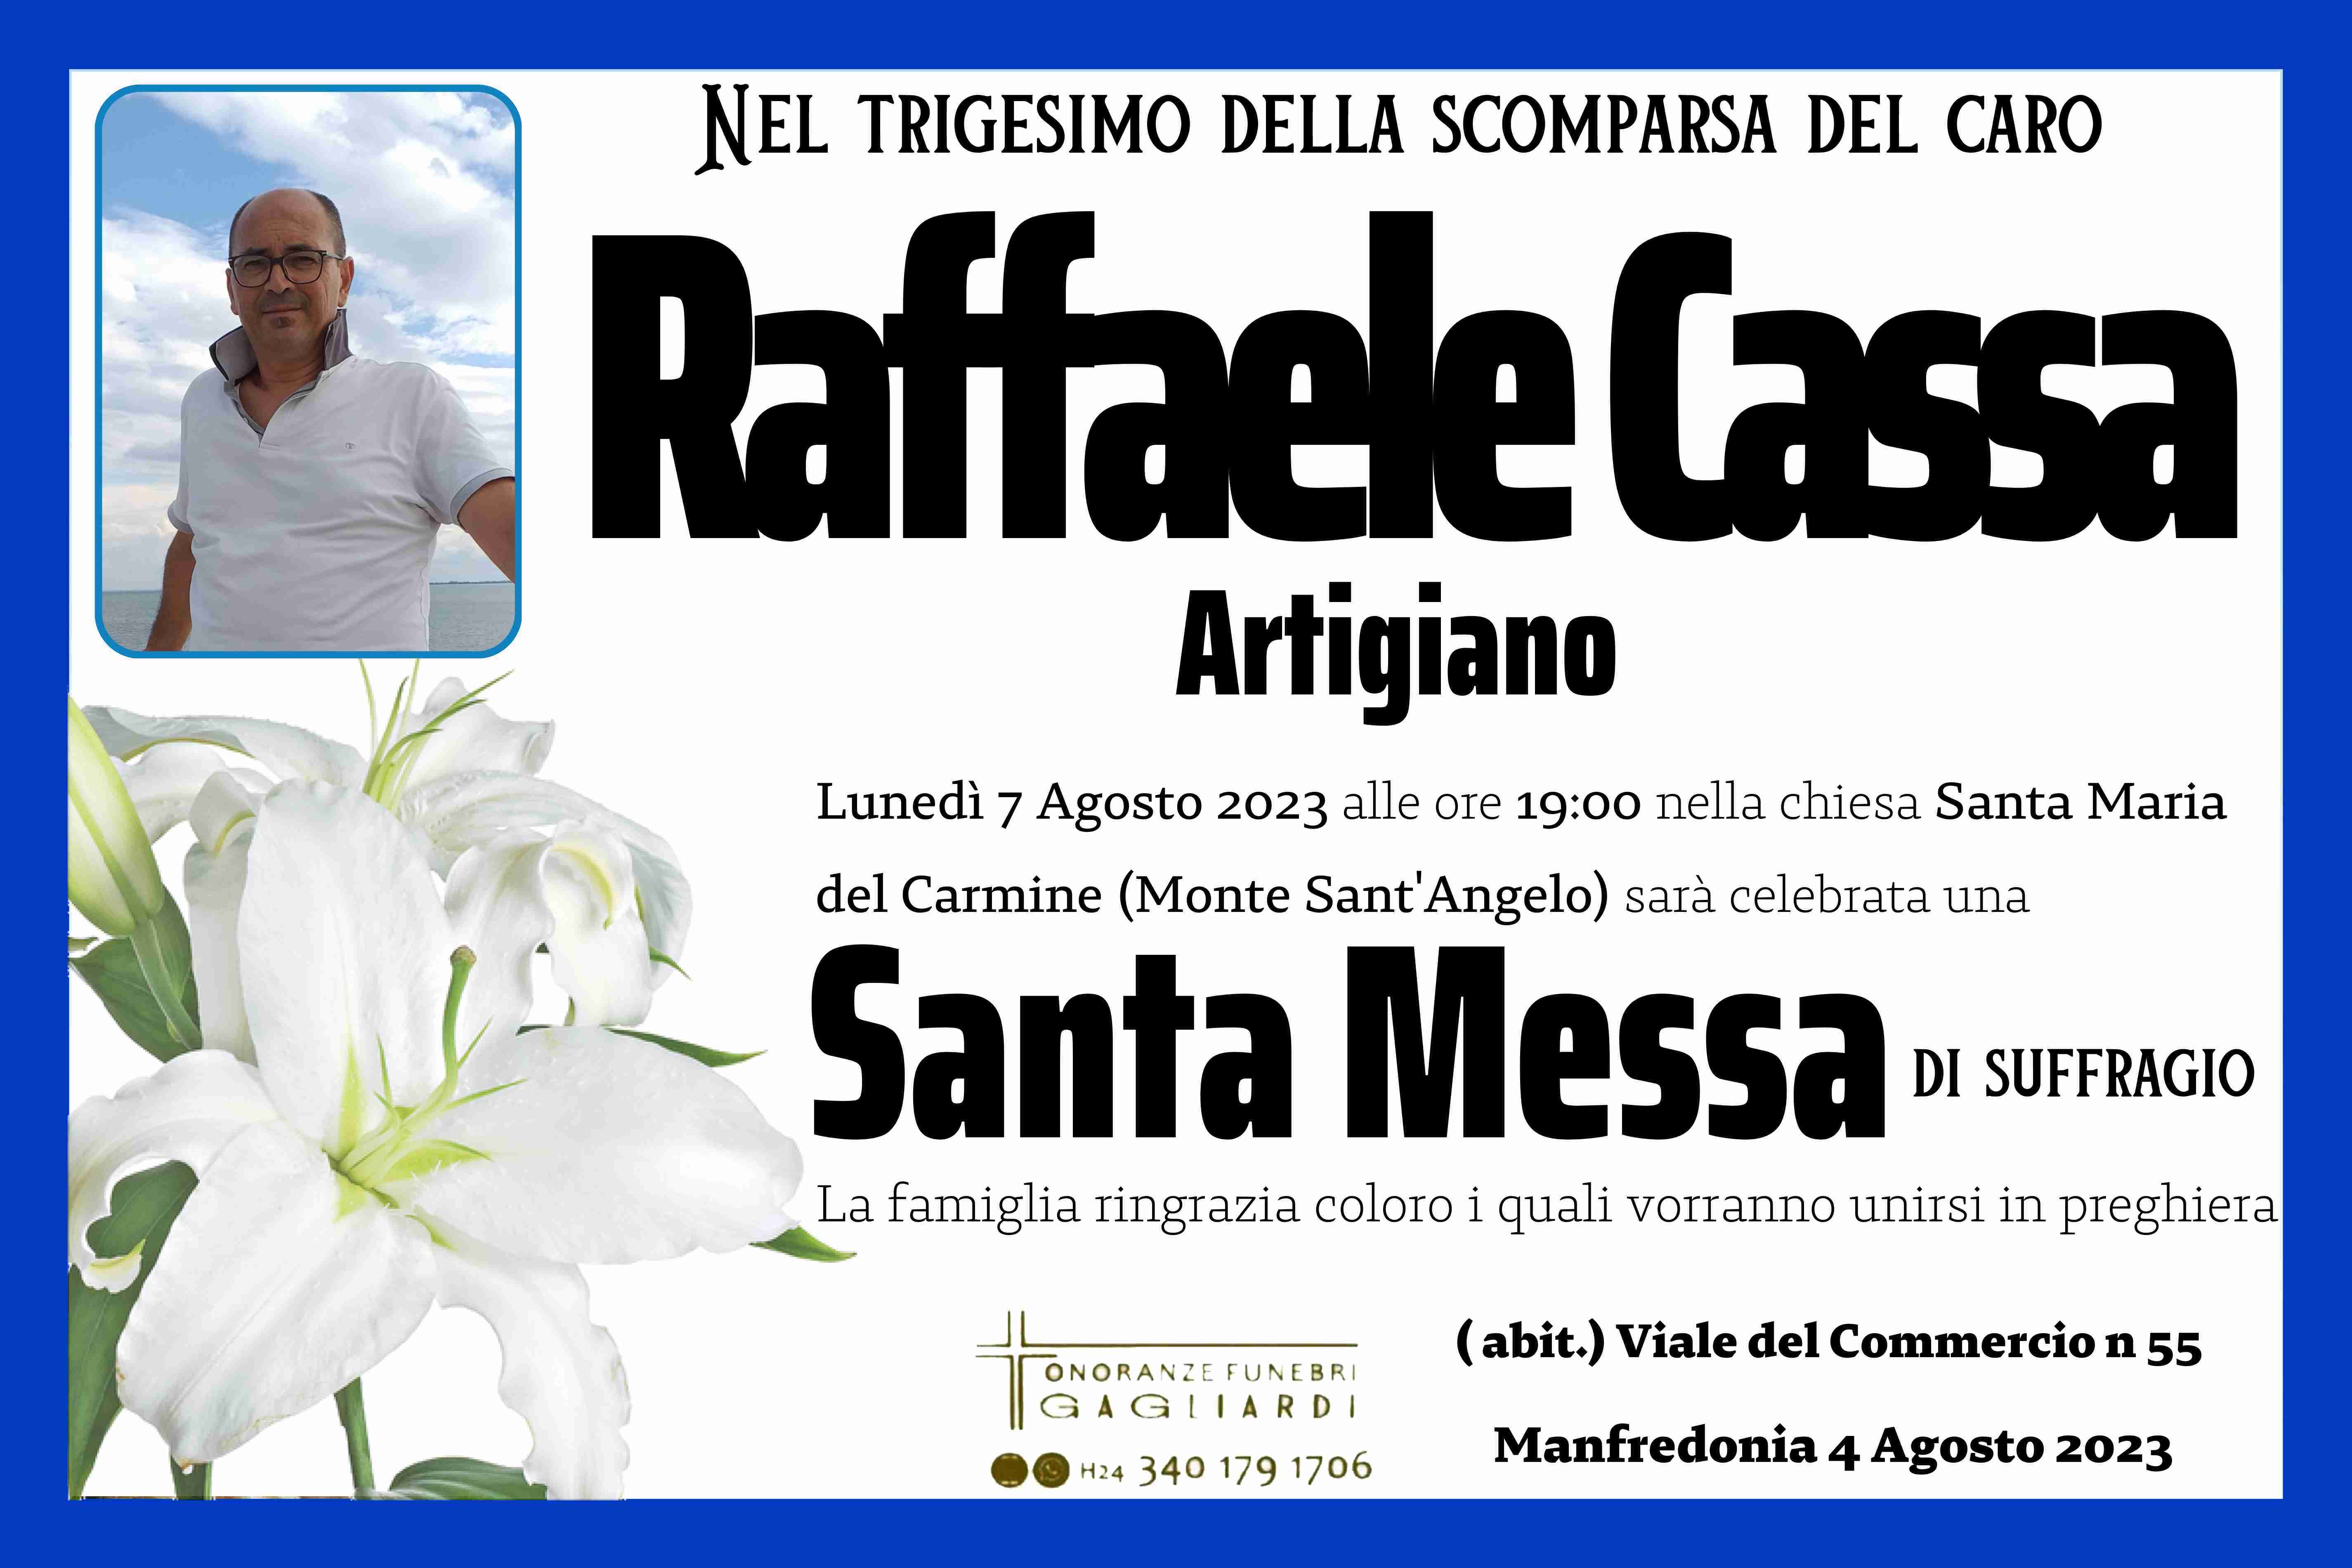 Raffaele Cassa